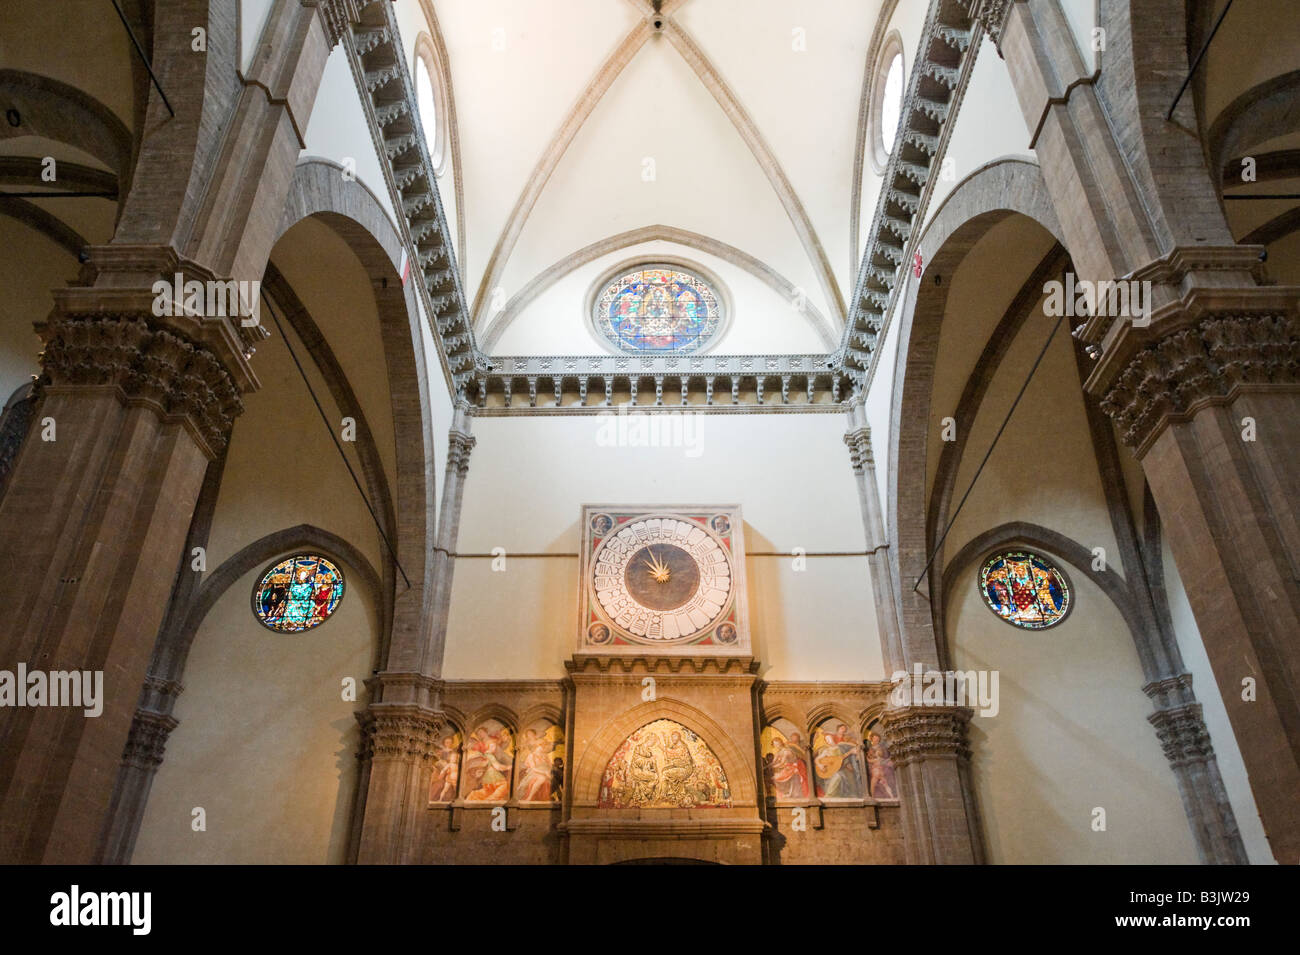 Interior of the Basilica di Santa Maria del Fiore (the Duomo), Florence, Tuscany, Italy Stock Photo